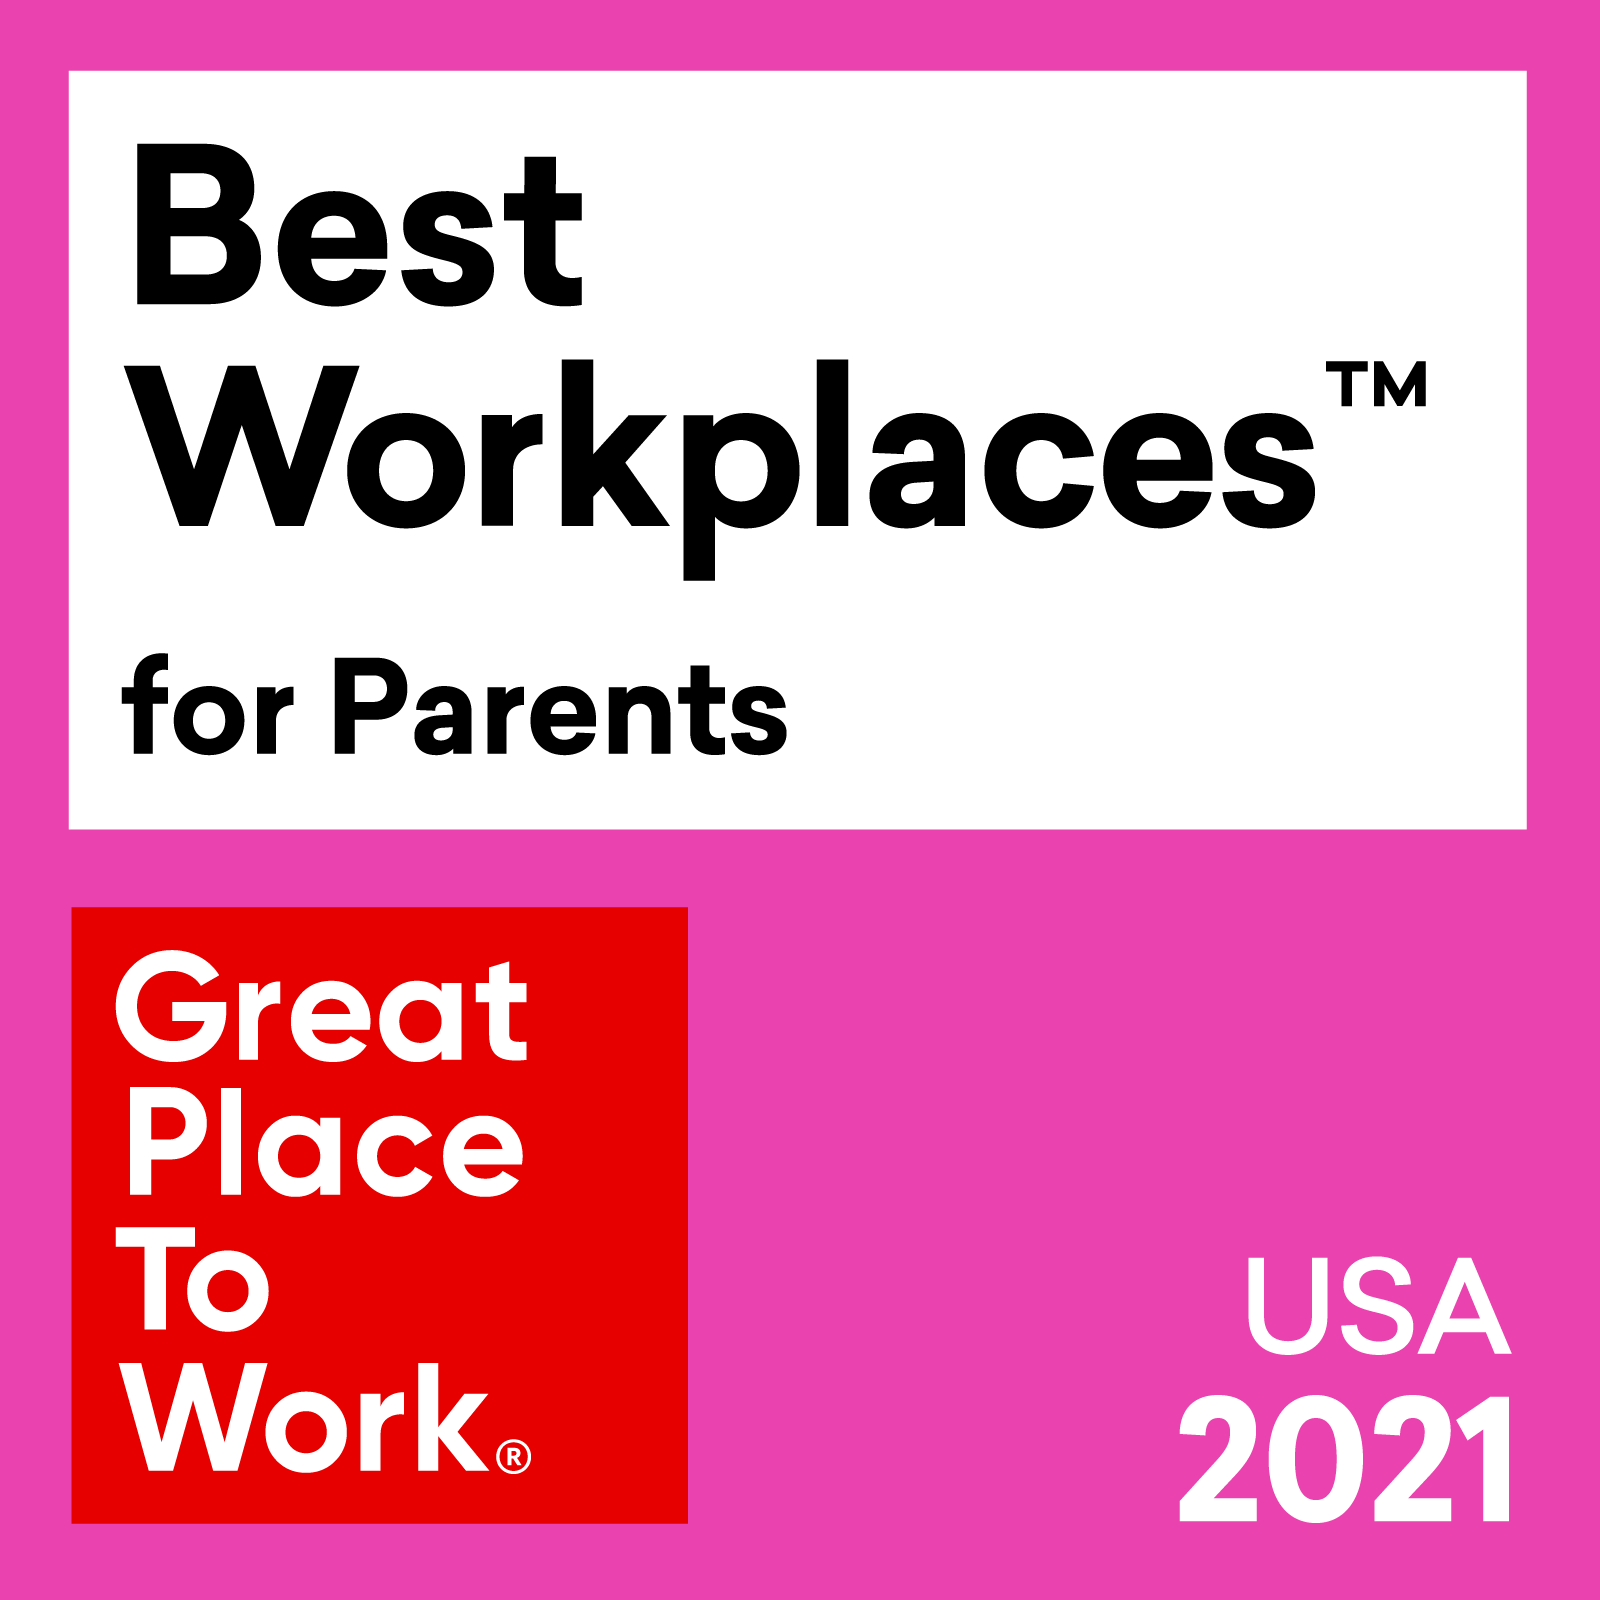 Premio Best Workplaces™️ for Parents de 2021 en los Estados Unidos, otorgado por Great Place To Work